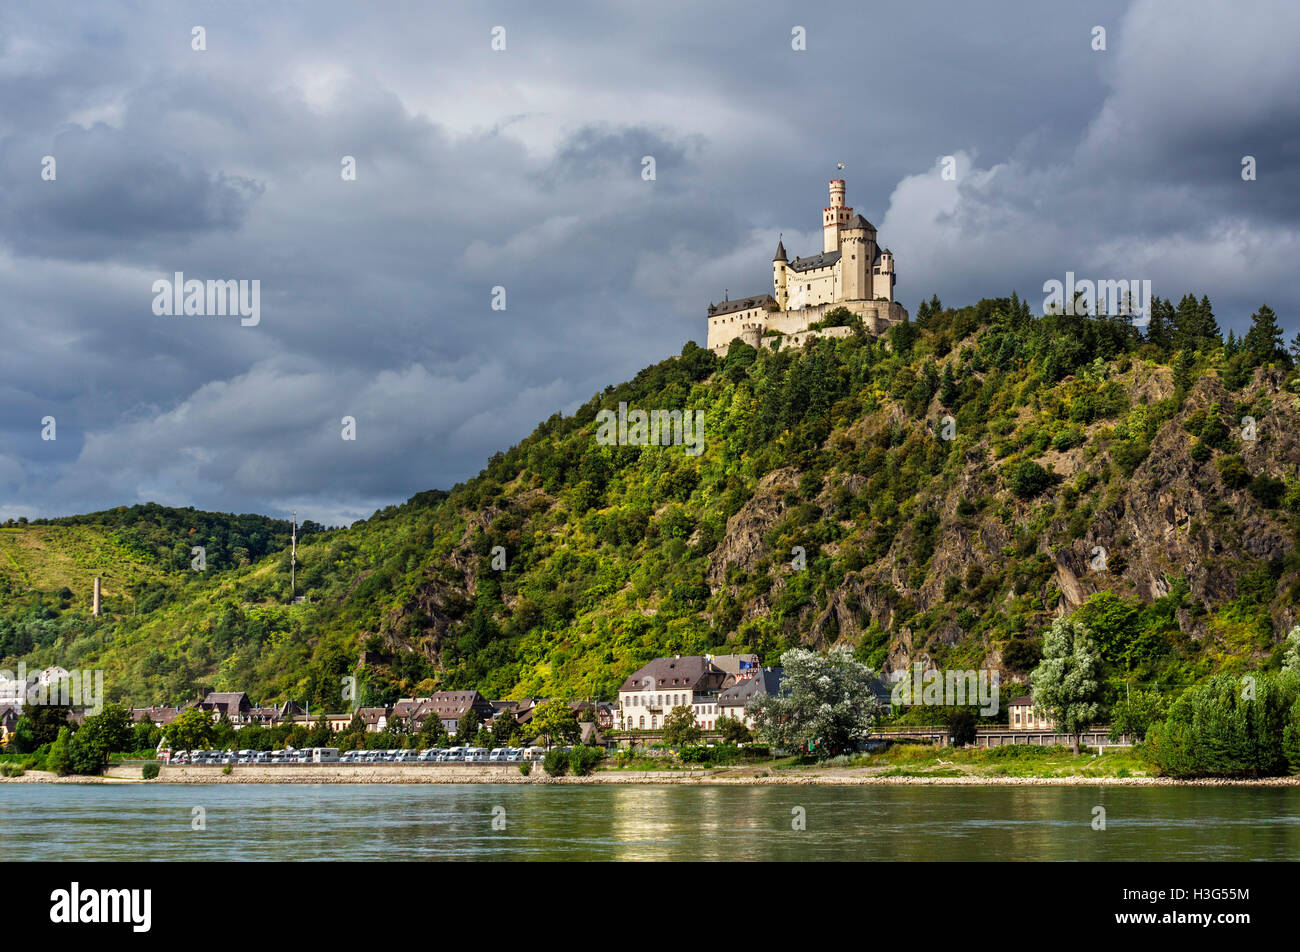 Die Marksburg Burg am Rhein angesehen von Braubach, Rheintal, Rheinland-Pfalz, Deutschland Stockfoto